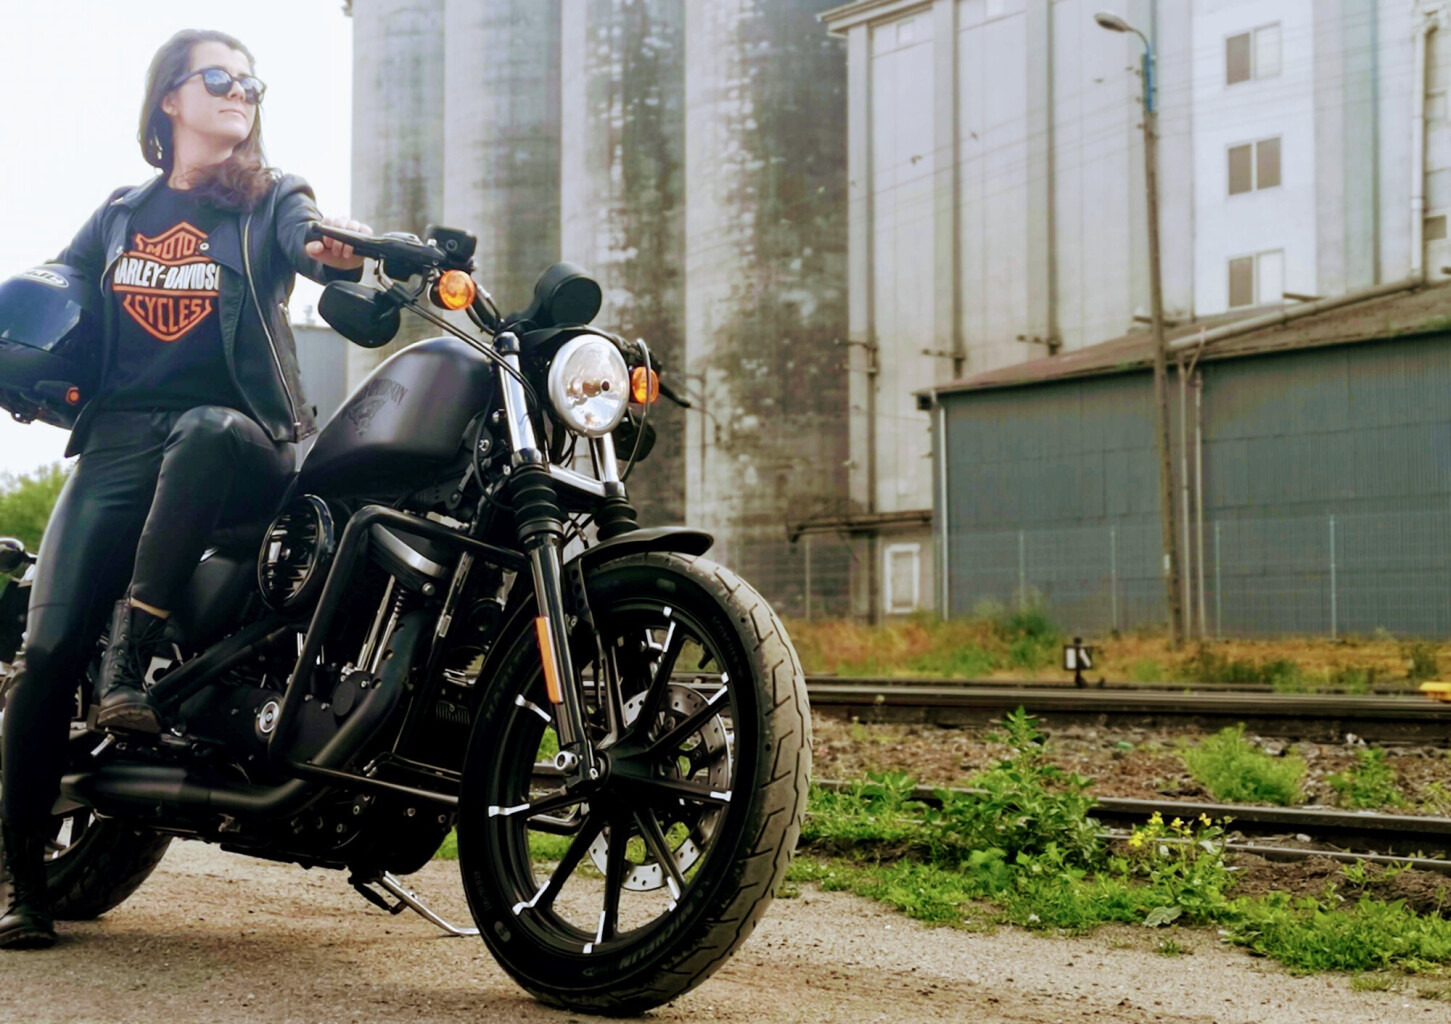 Całodzienna Wyprawa Motocyklem Harley-Davidson | Wiele Lokalizacji